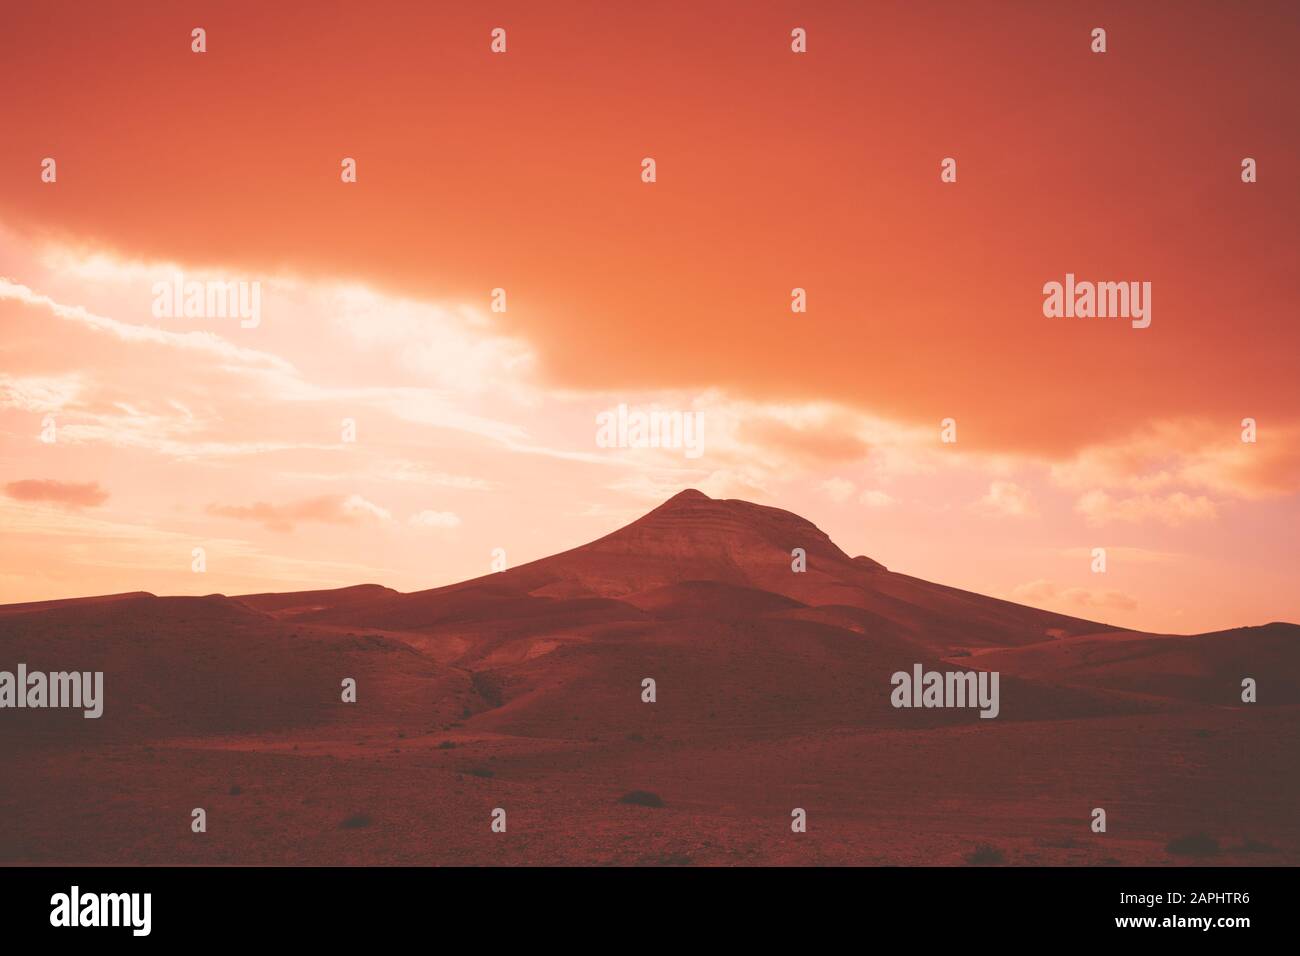 Deserto montuoso con spettacolare serata cielo nuvoloso al tramonto. Il Deserto Della Giudea In Israele Foto Stock